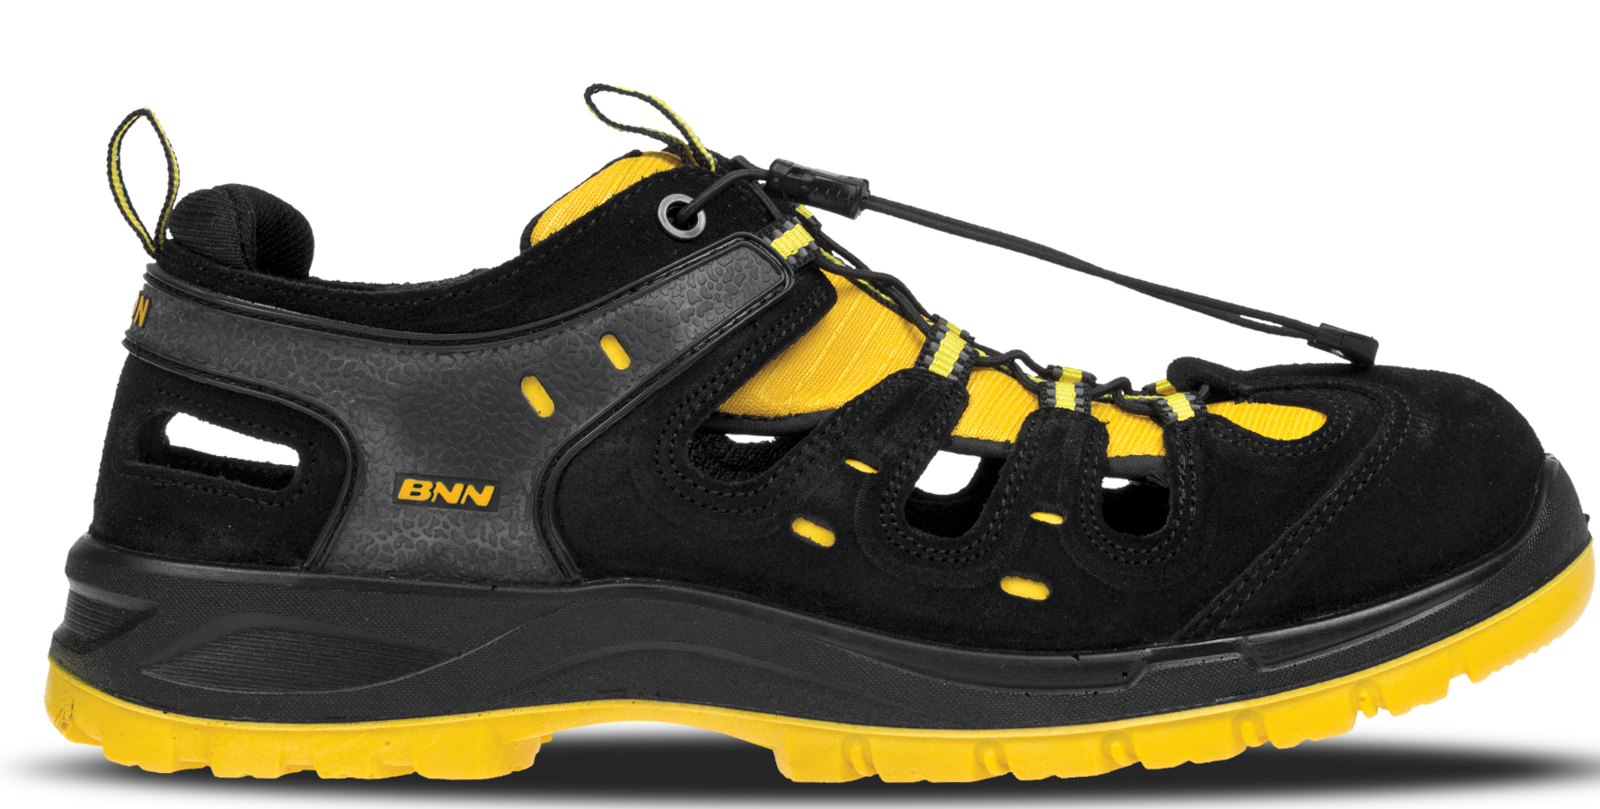 Bezpečnostné sandále Bombis lite NM S1 - veľkosť: 45, farba: žltá